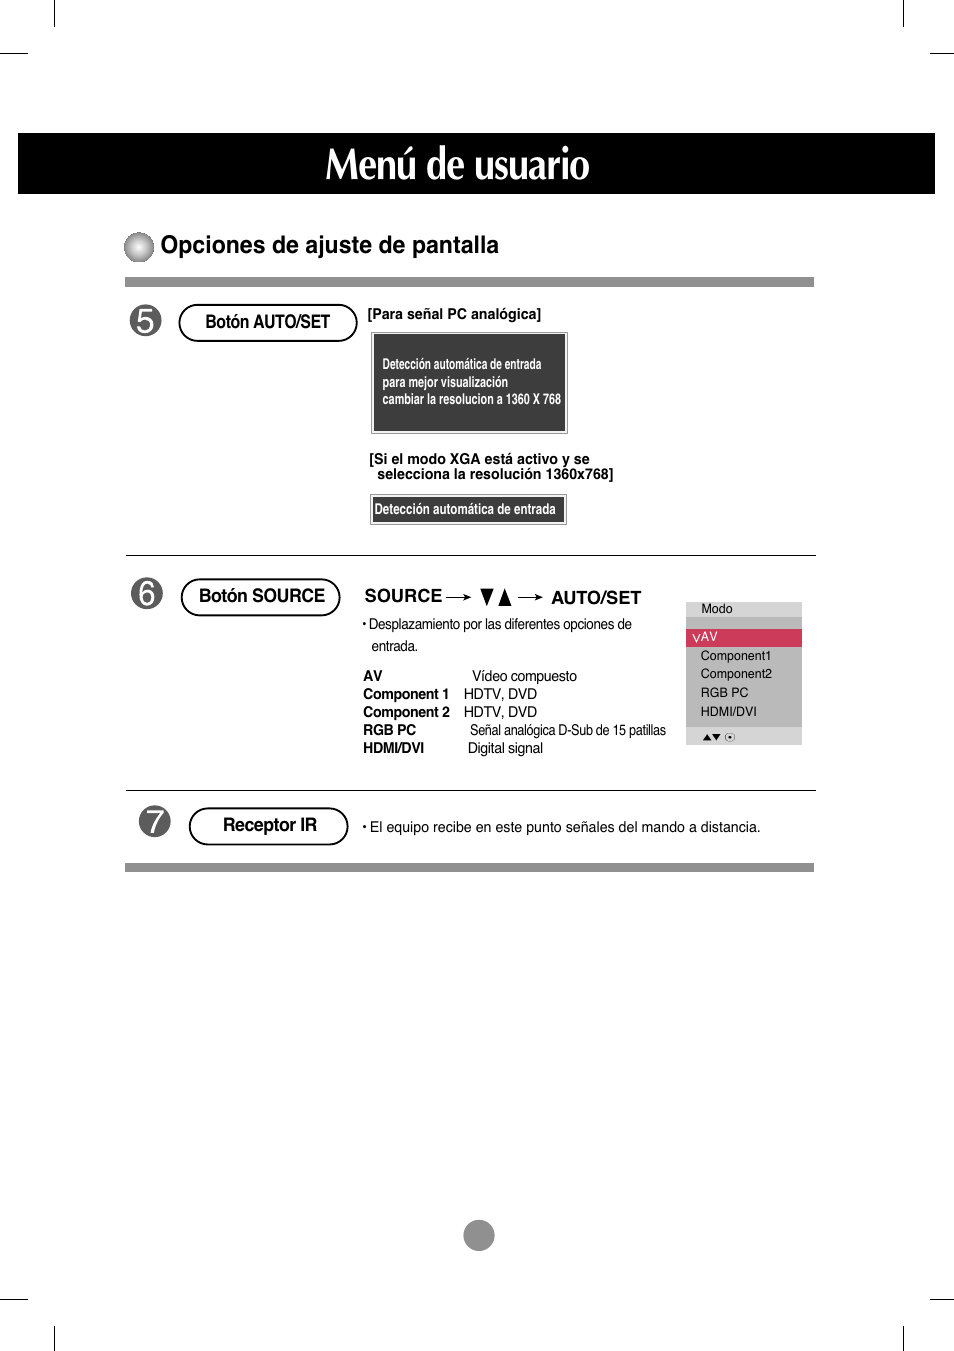 Menú de usuario, Opciones de ajuste de pantalla | LG M4212C-BA User Manual | Page 19 / 67